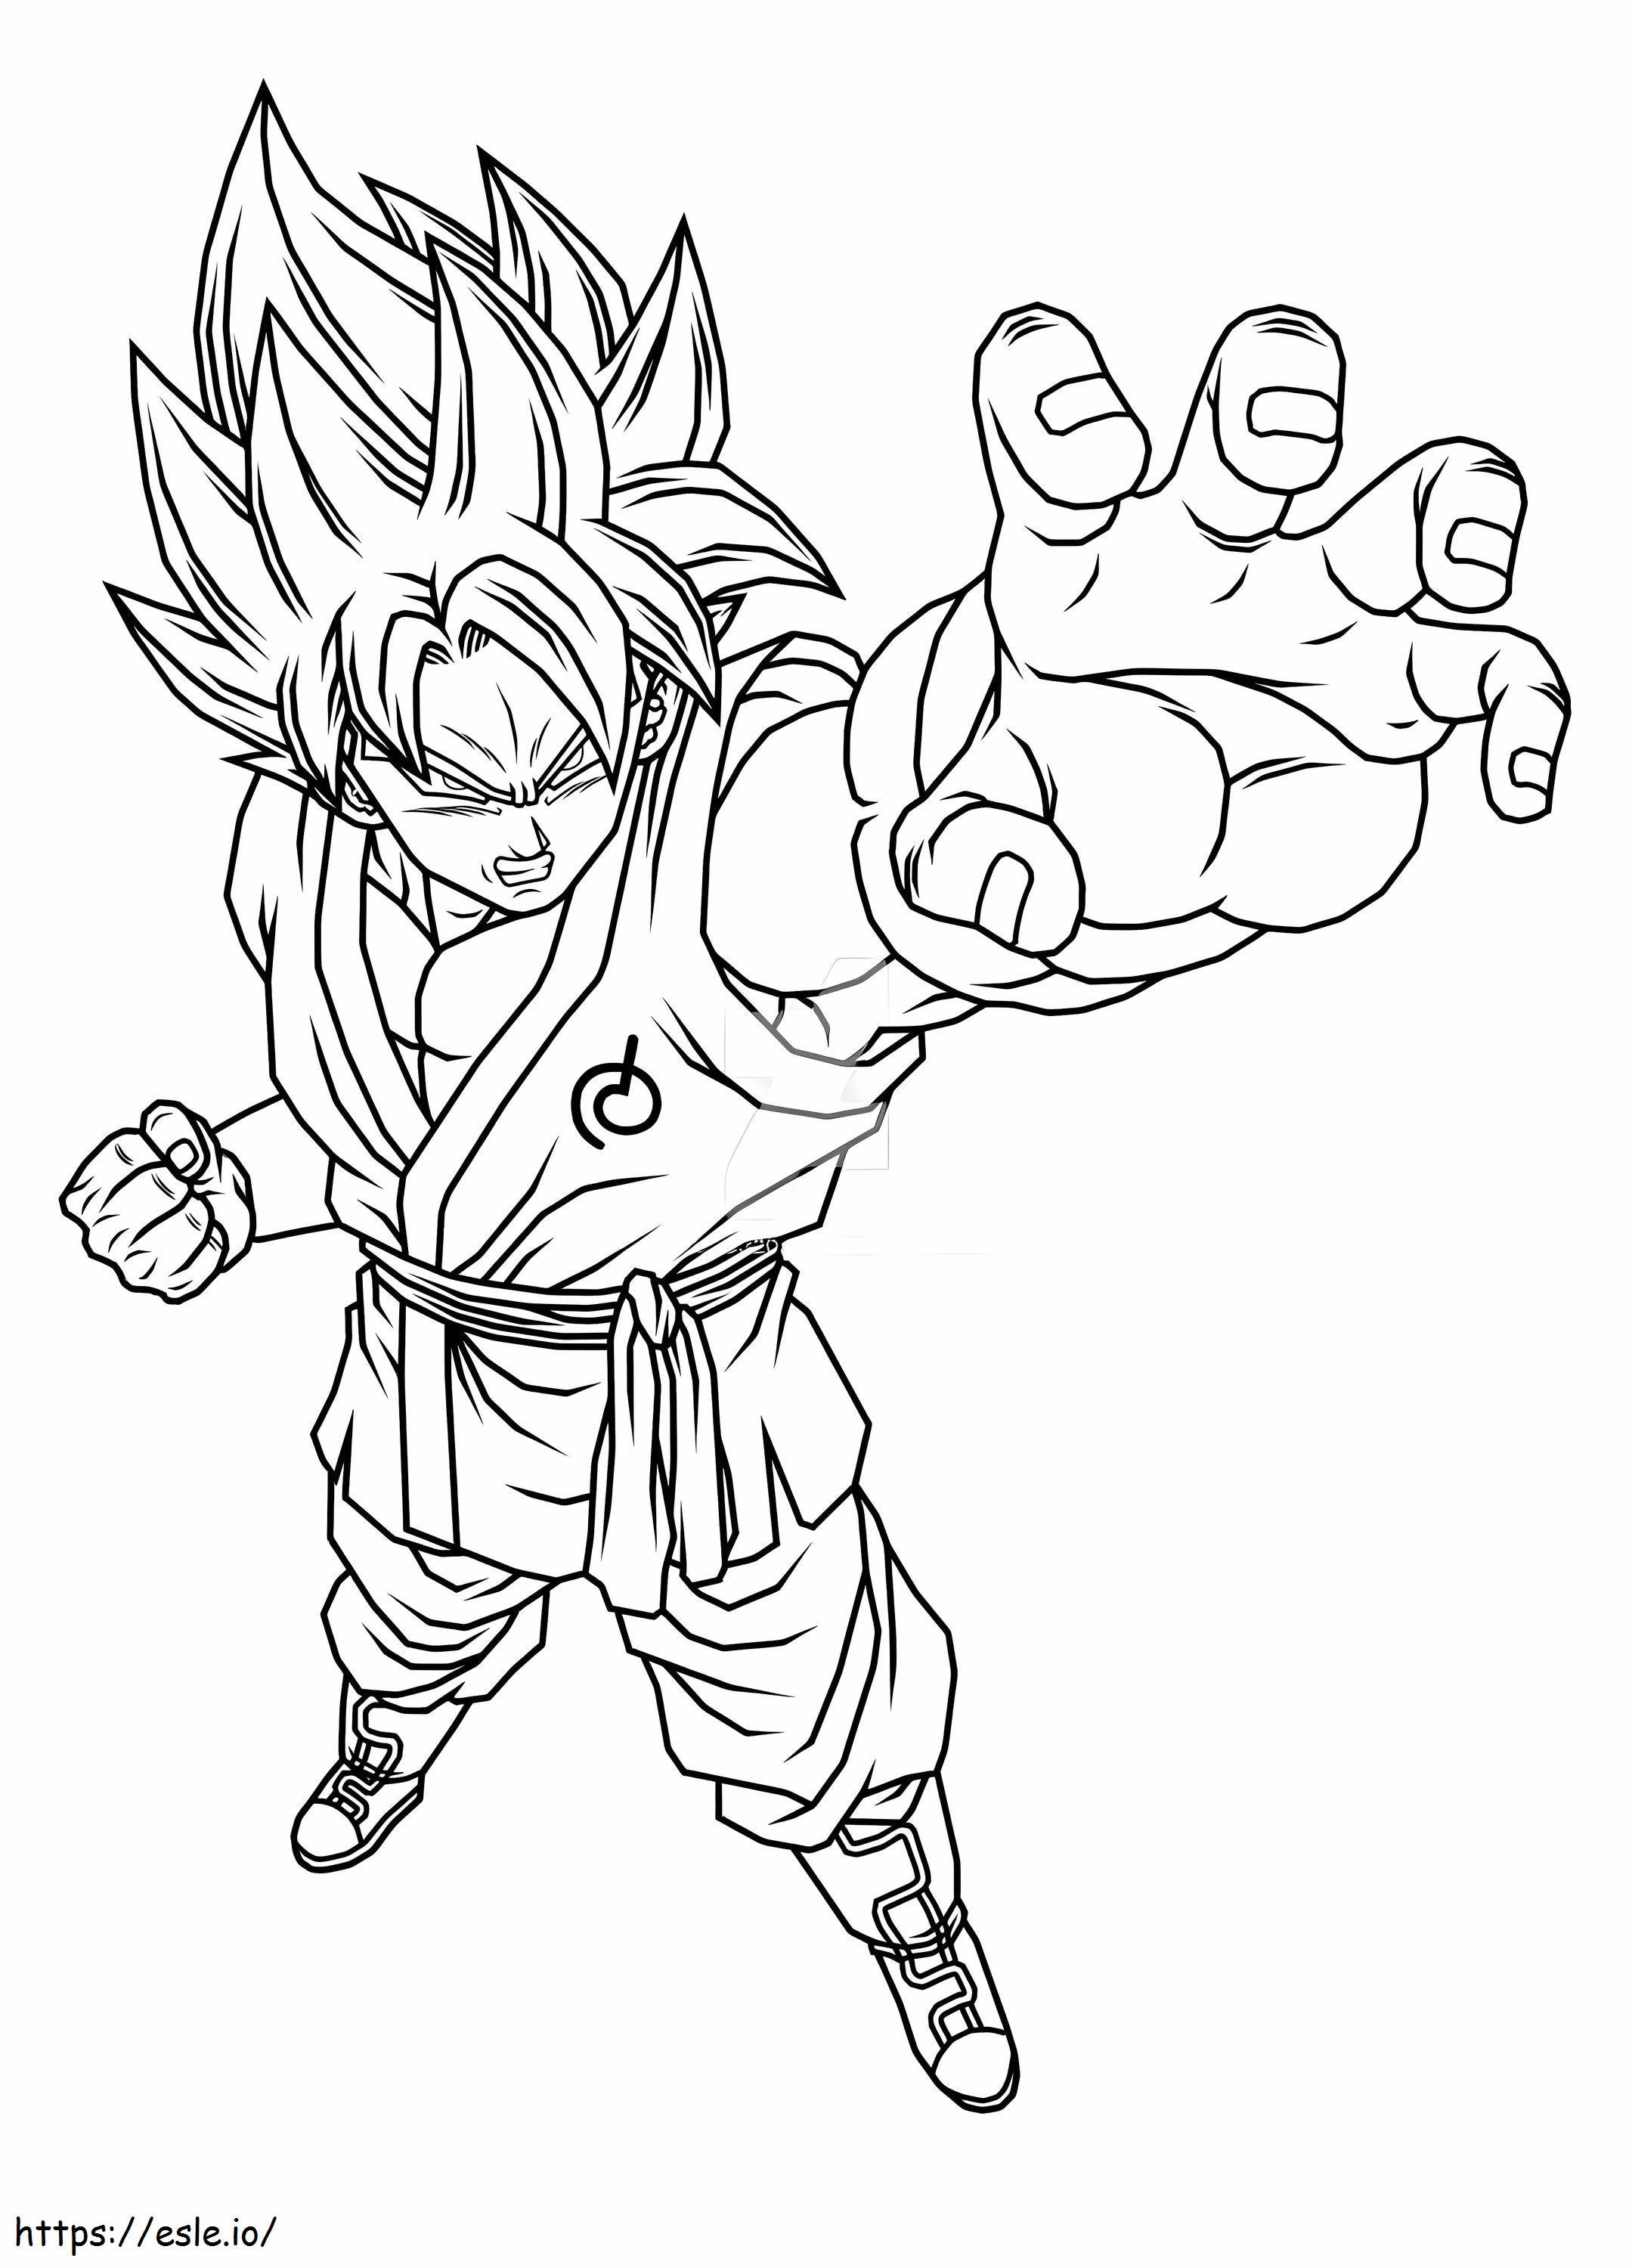 Kızgın Goku boyama